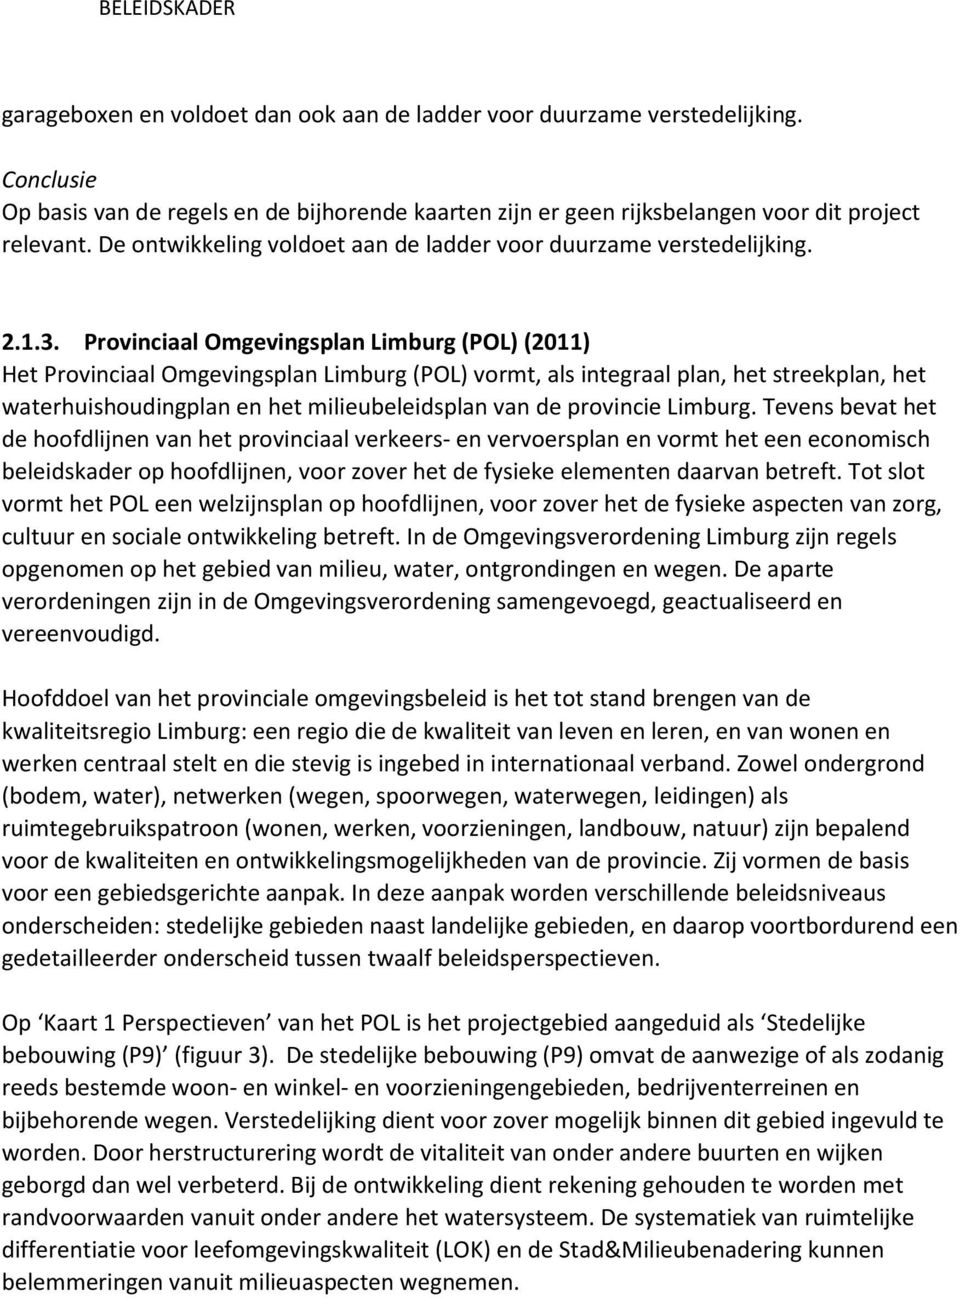 Provinciaal Omgevingsplan Limburg (POL) (2011) Het Provinciaal Omgevingsplan Limburg (POL) vormt, als integraal plan, het streekplan, het waterhuishoudingplan en het milieubeleidsplan van de